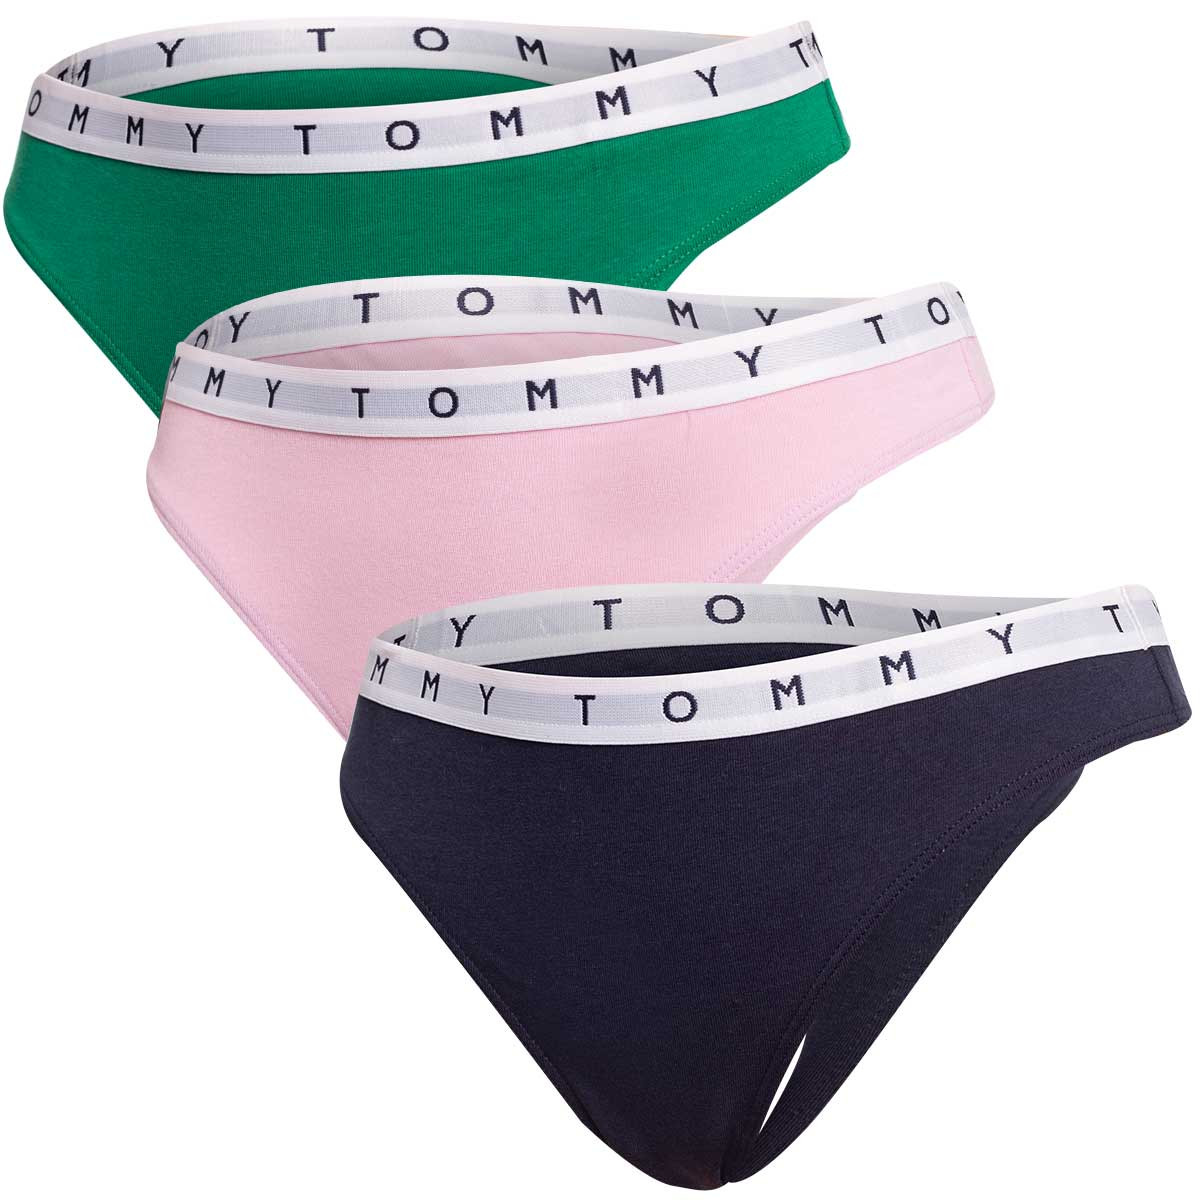 Tommy Hilfiger 3Pack tanga kalhotky UW0UW025210V3 Green/Pink/Black S